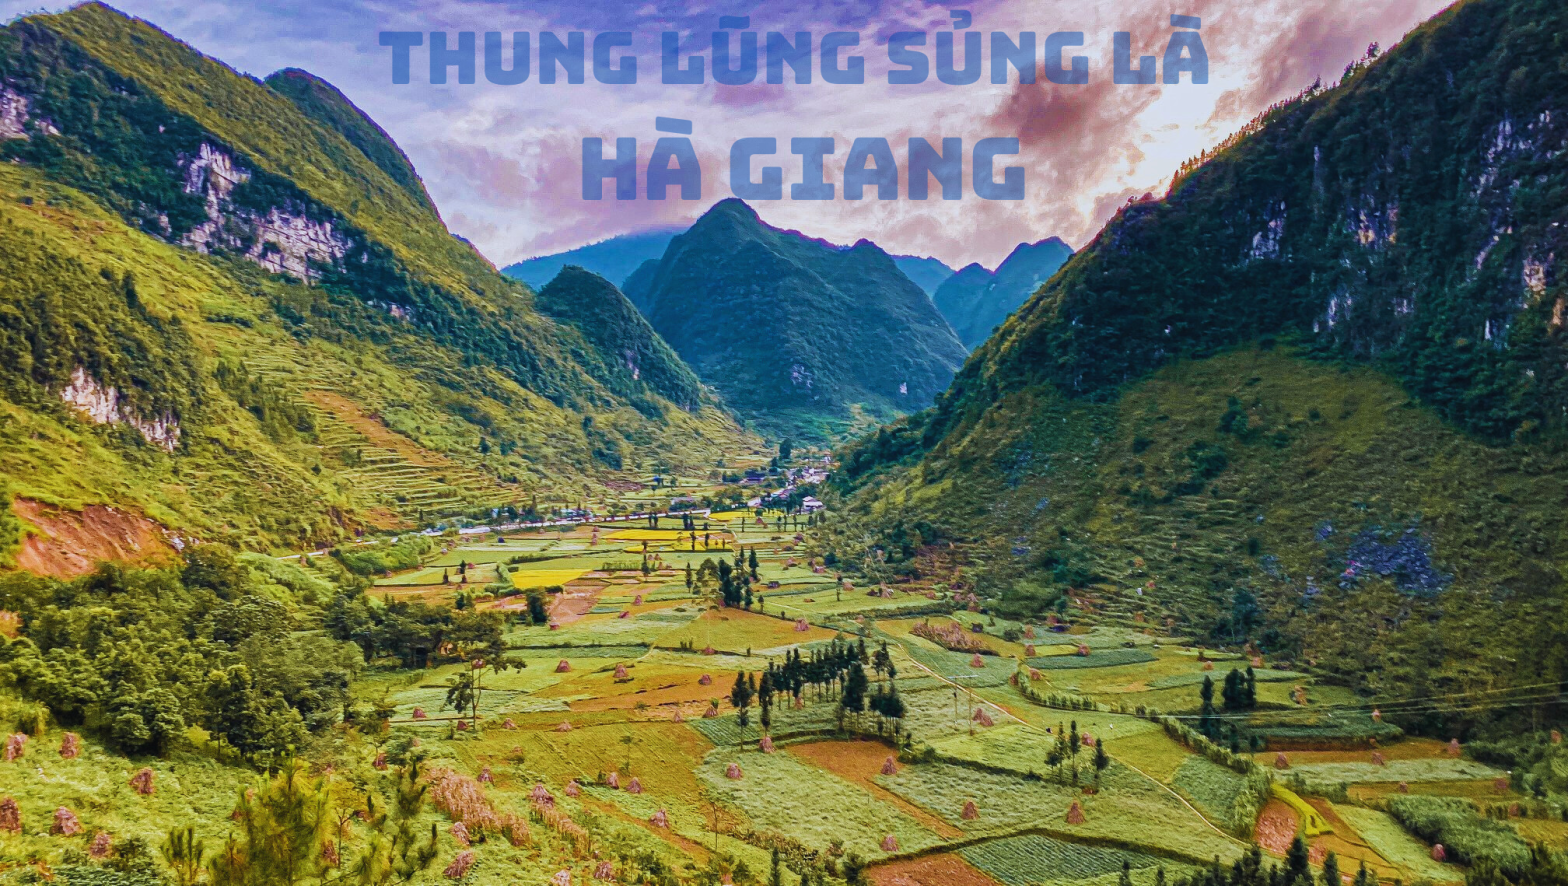 Anh Thung Lung Sung La Ha Giang mua lua chin